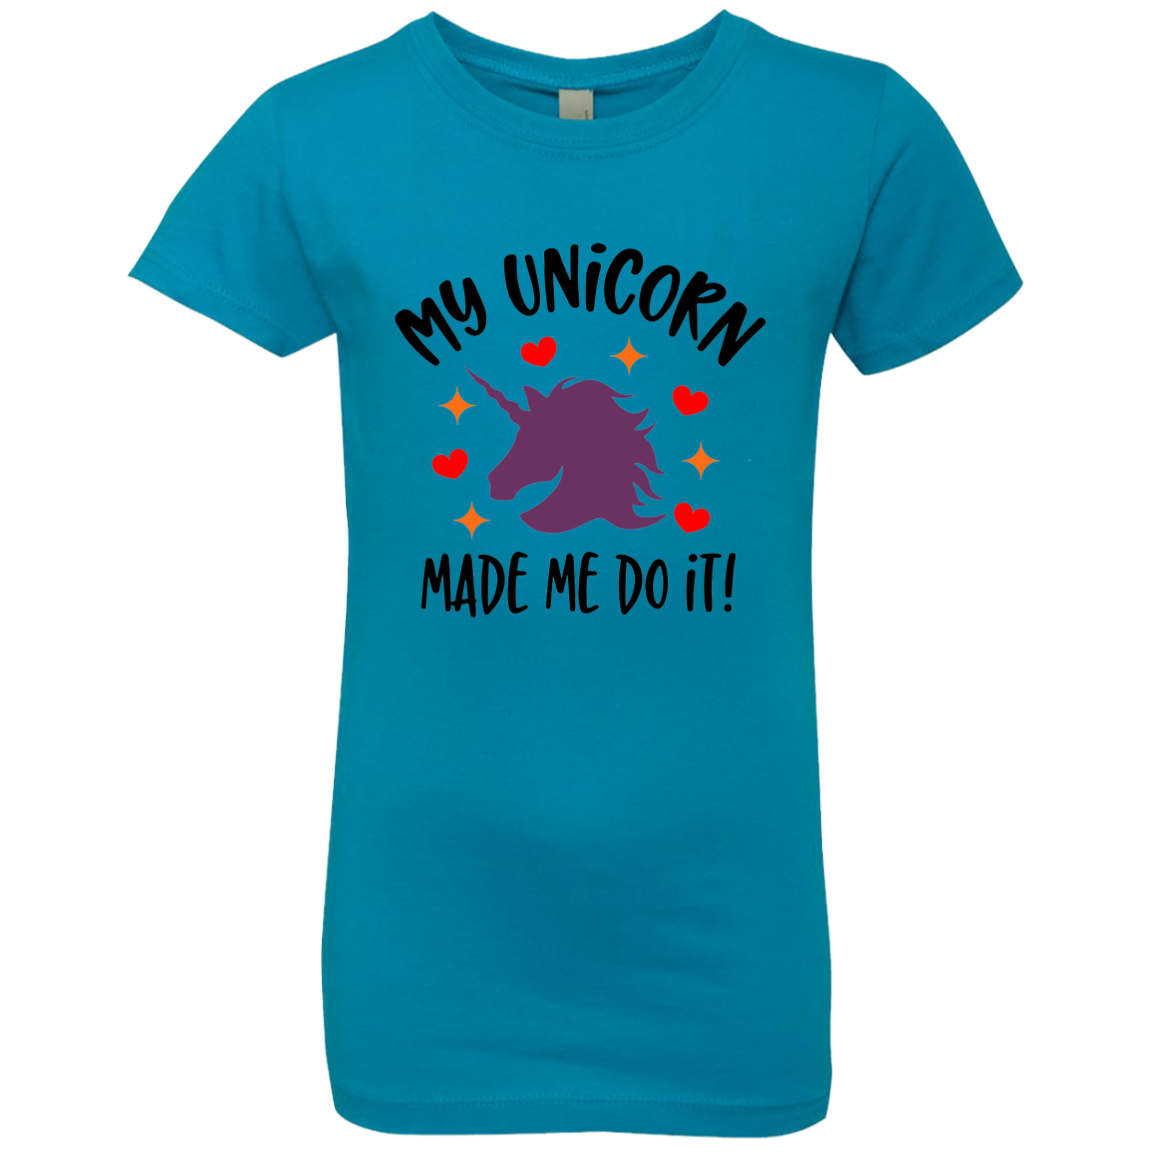 Unicorn Girls' Princess T-Shirt